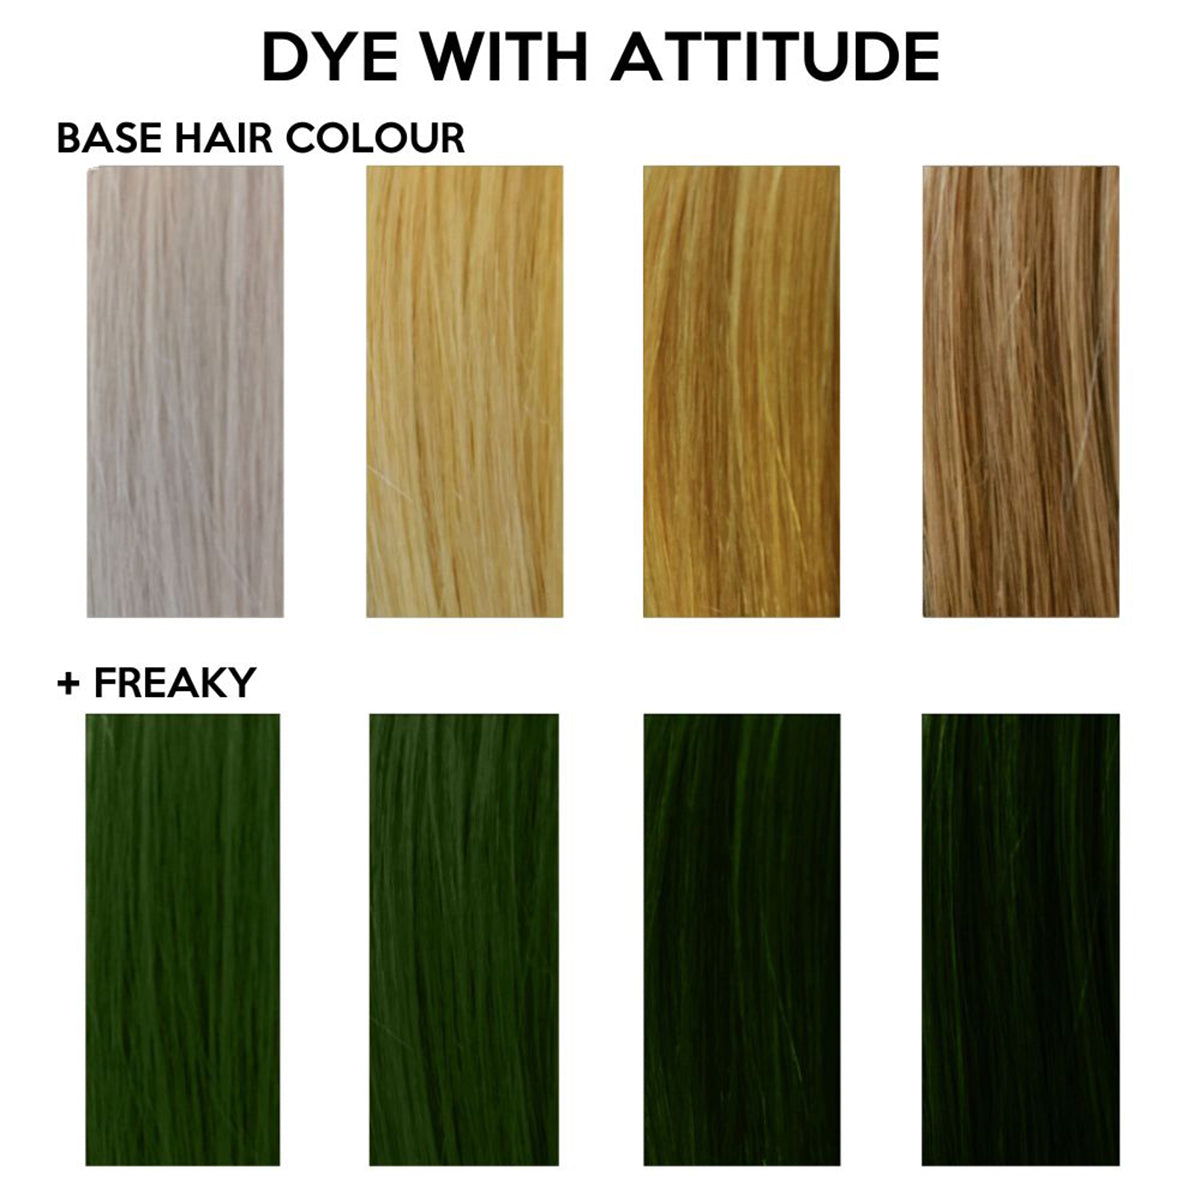 FREAKY OLIVE GREEN - Attitude Haarfärbemittel - 135ml